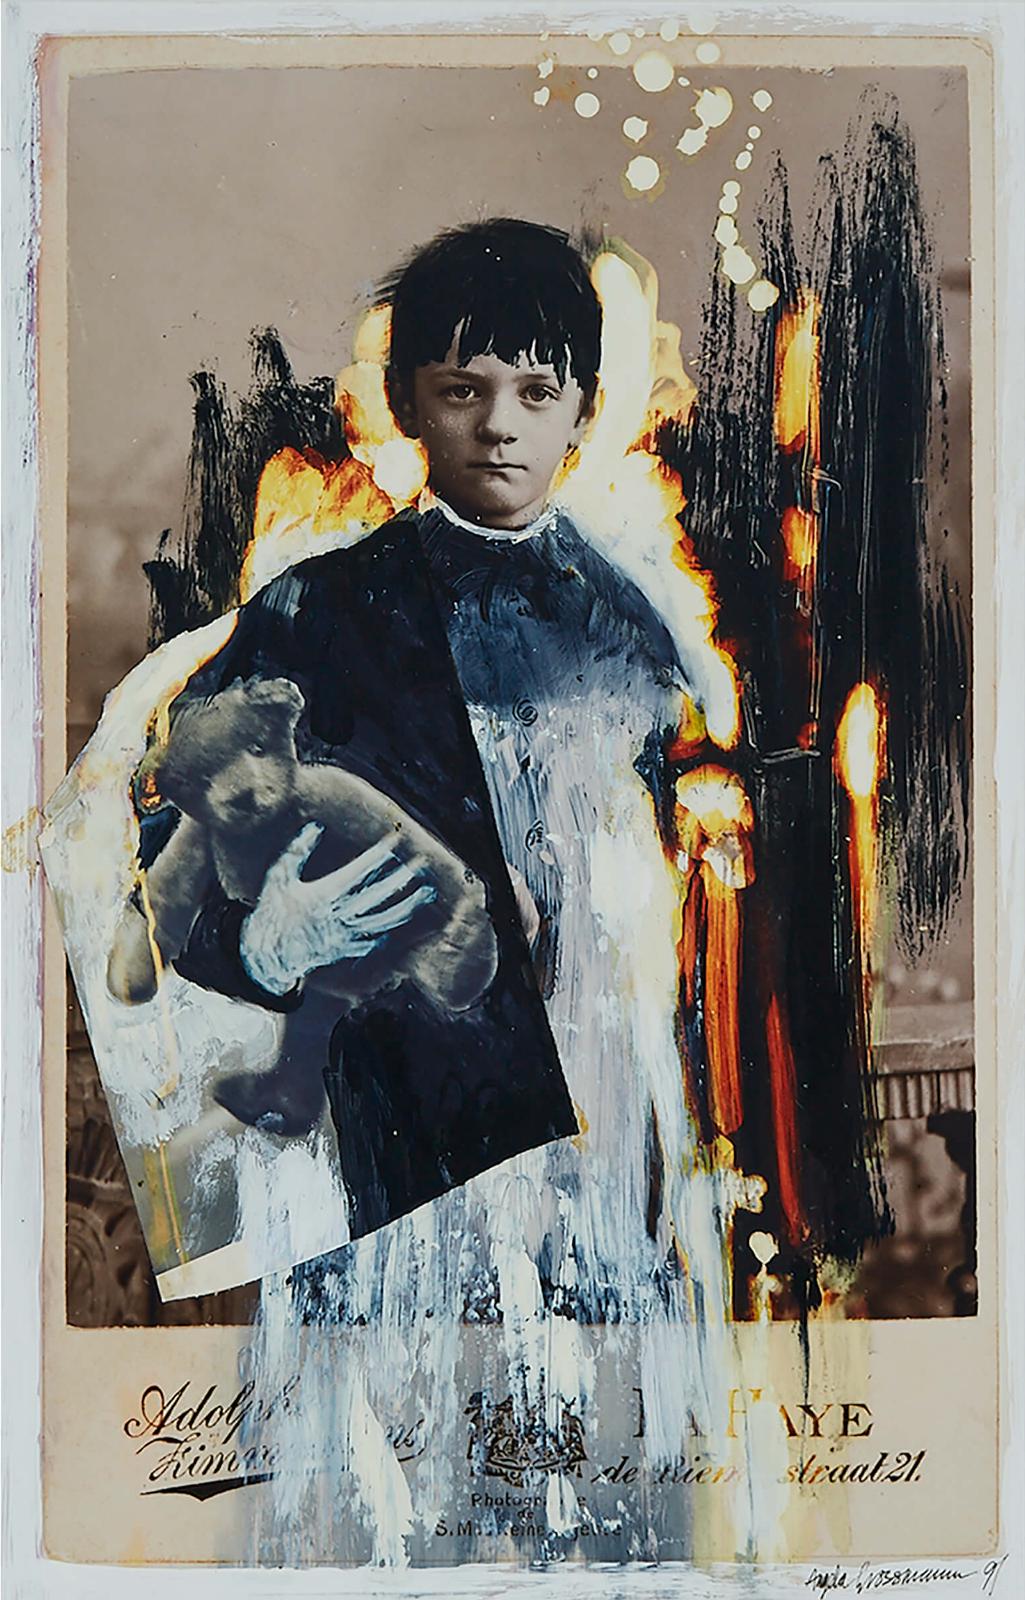 Angela Grossmann (1955) - Untitled (Boy With Flames And Teddy), 1991